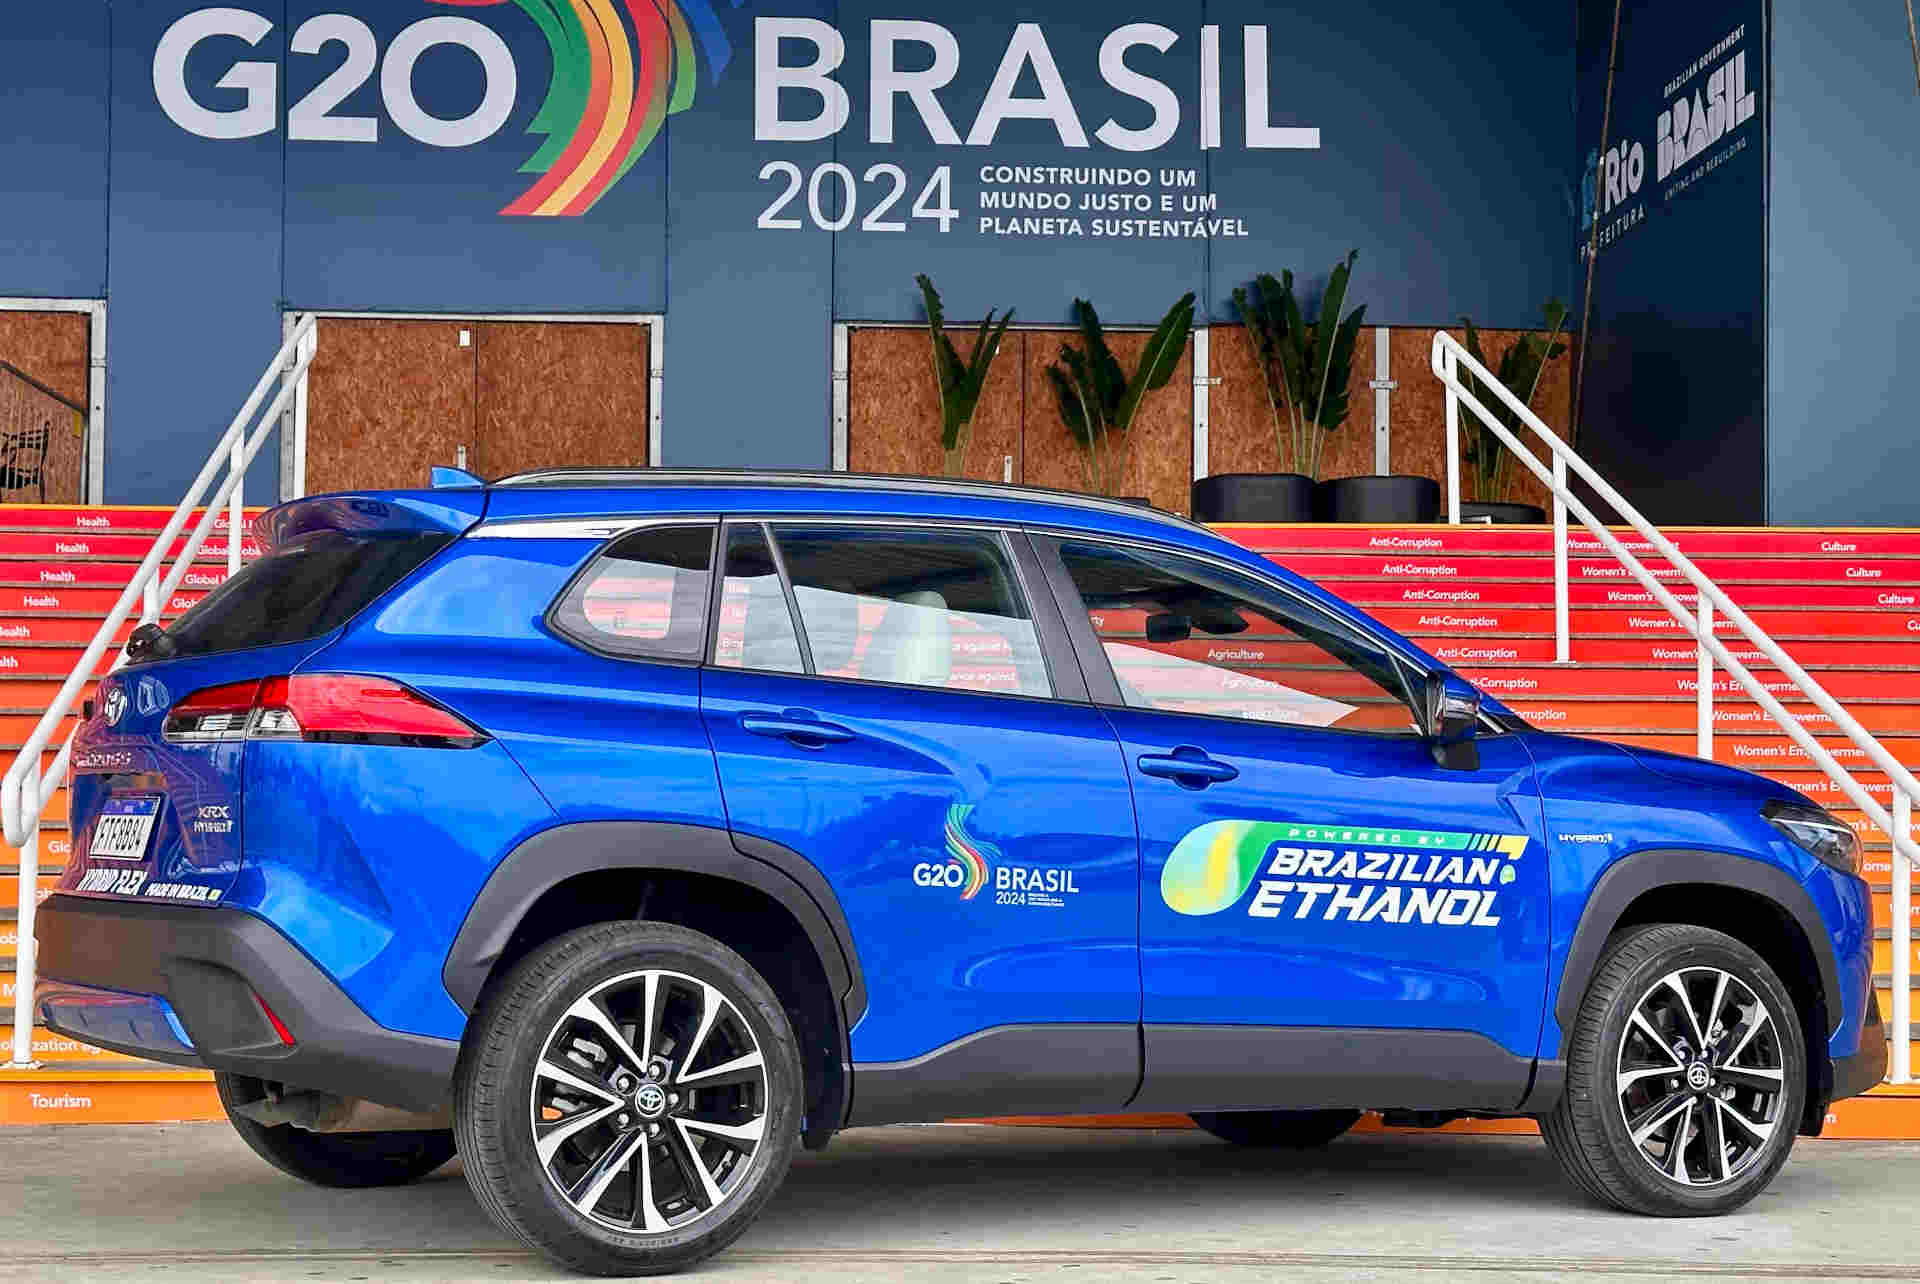 Foto de capa do Toyota Corolla Cross Hibrido Flex 2024 durante encontro do G20 no Brasil